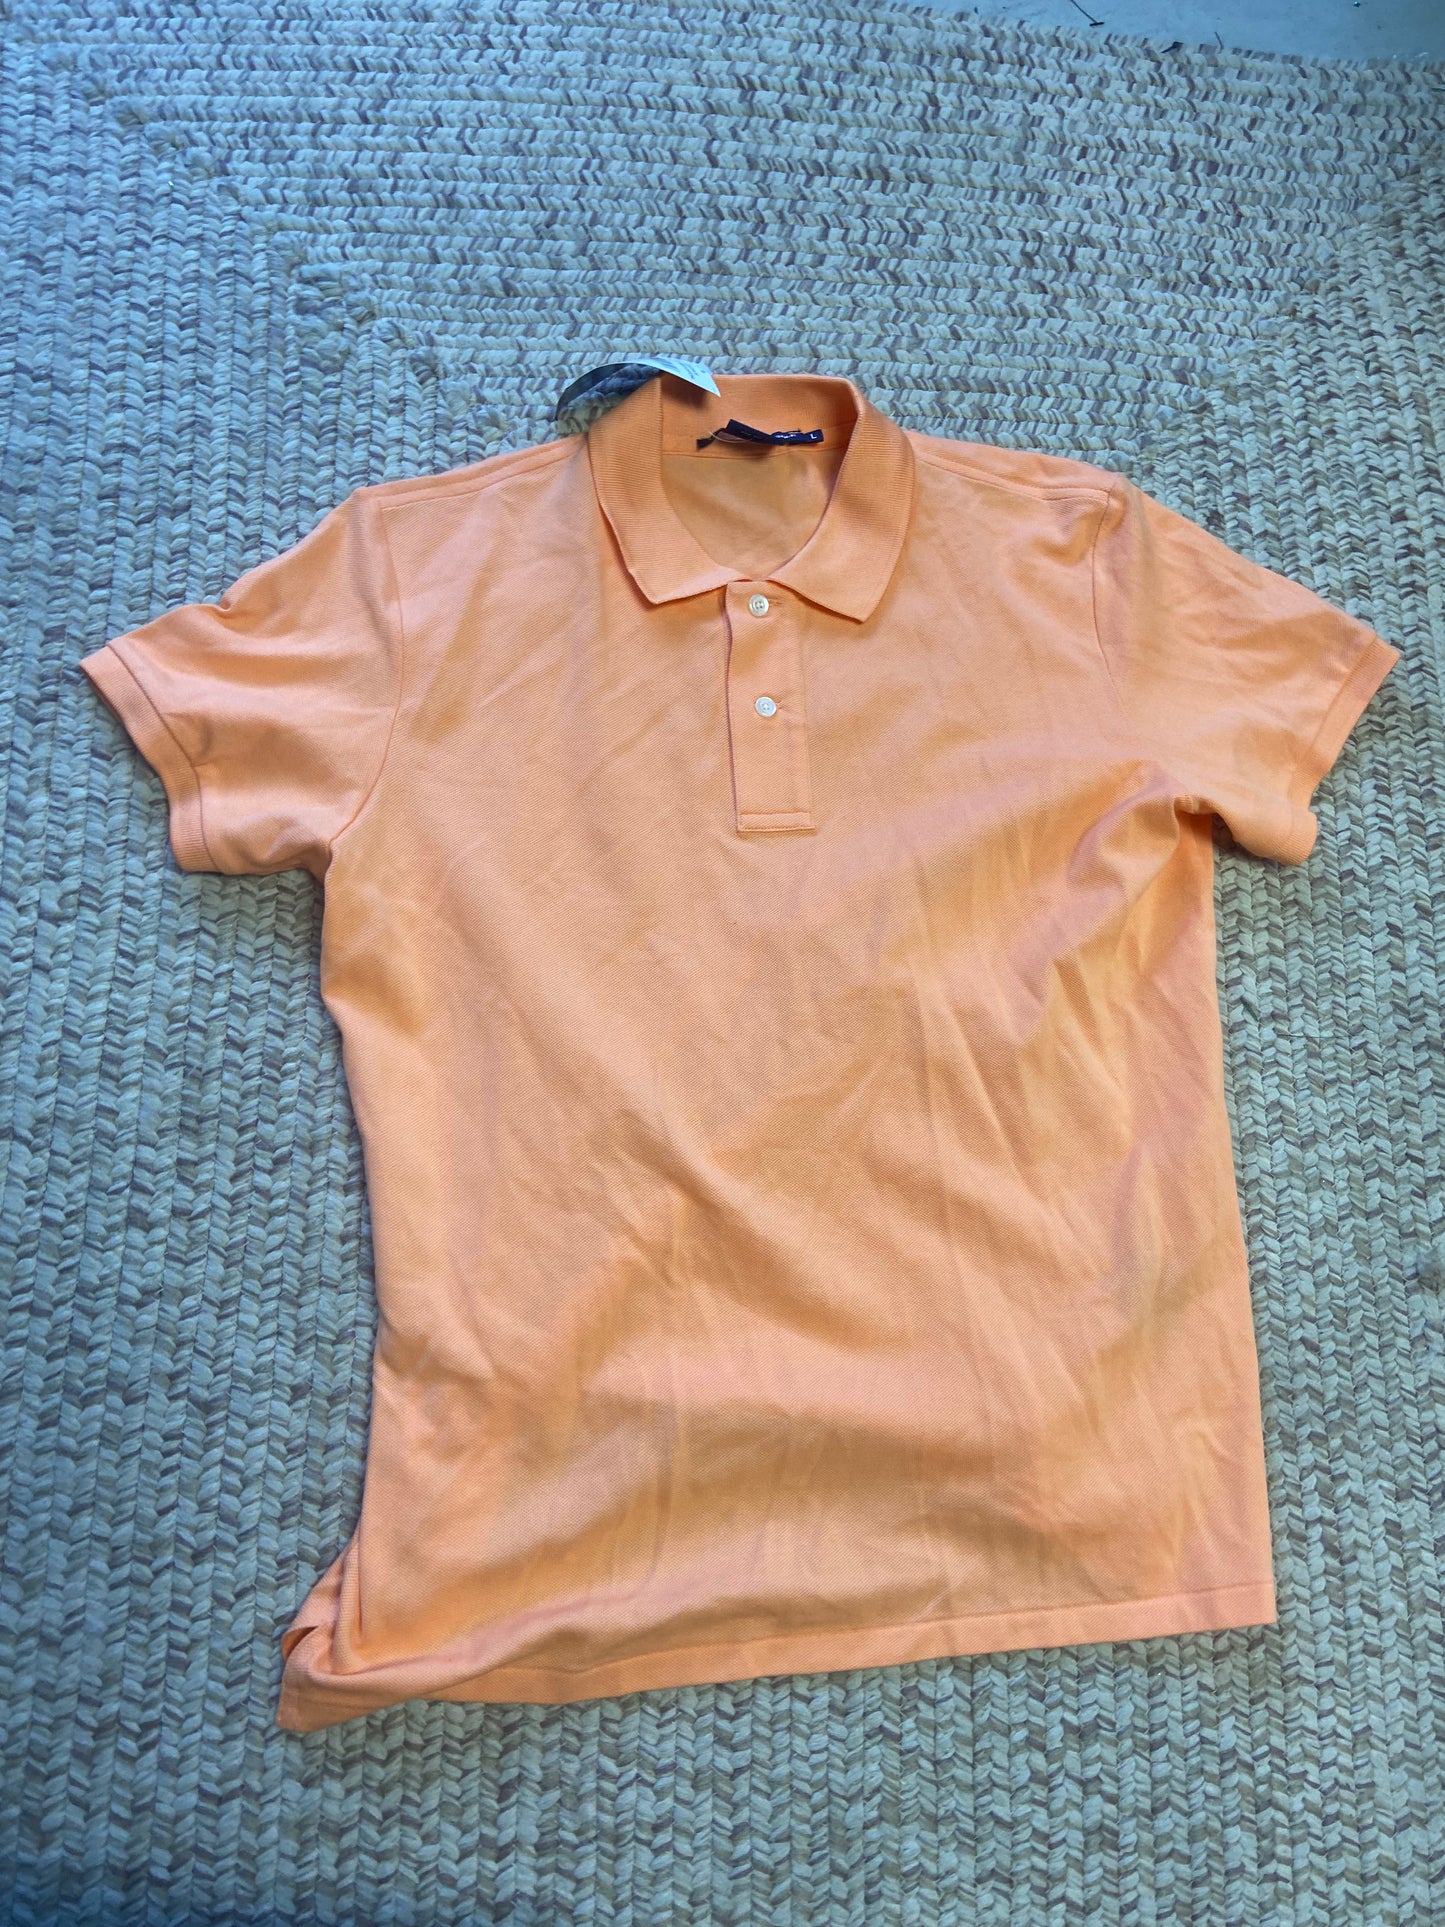 Ralph Lauren Golf Shirt. Size: Large